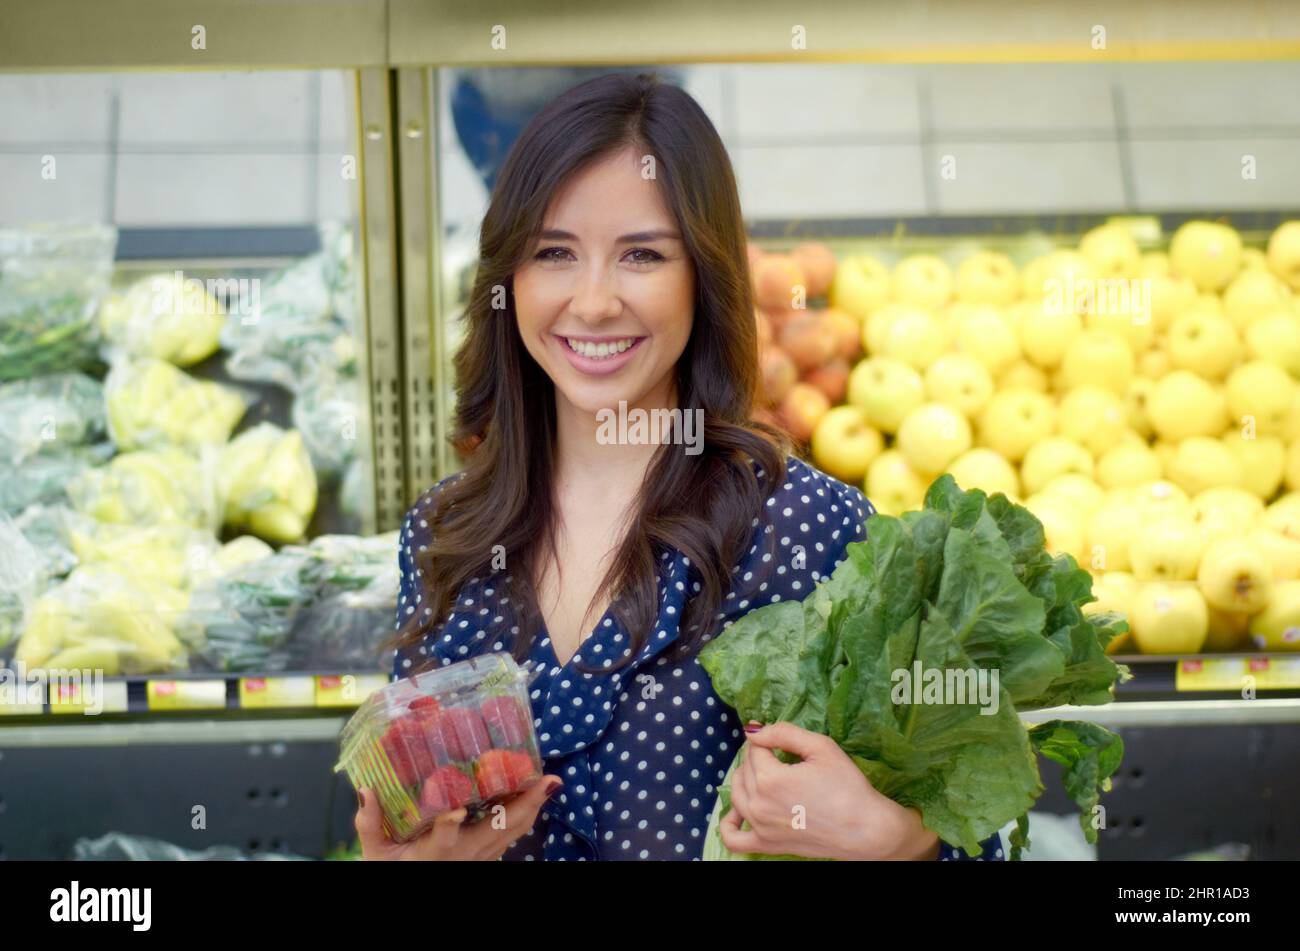 Mein Lieblingsgang. Eine junge Frau, die lächelt, während sie Gemüse kauft. Stockfoto